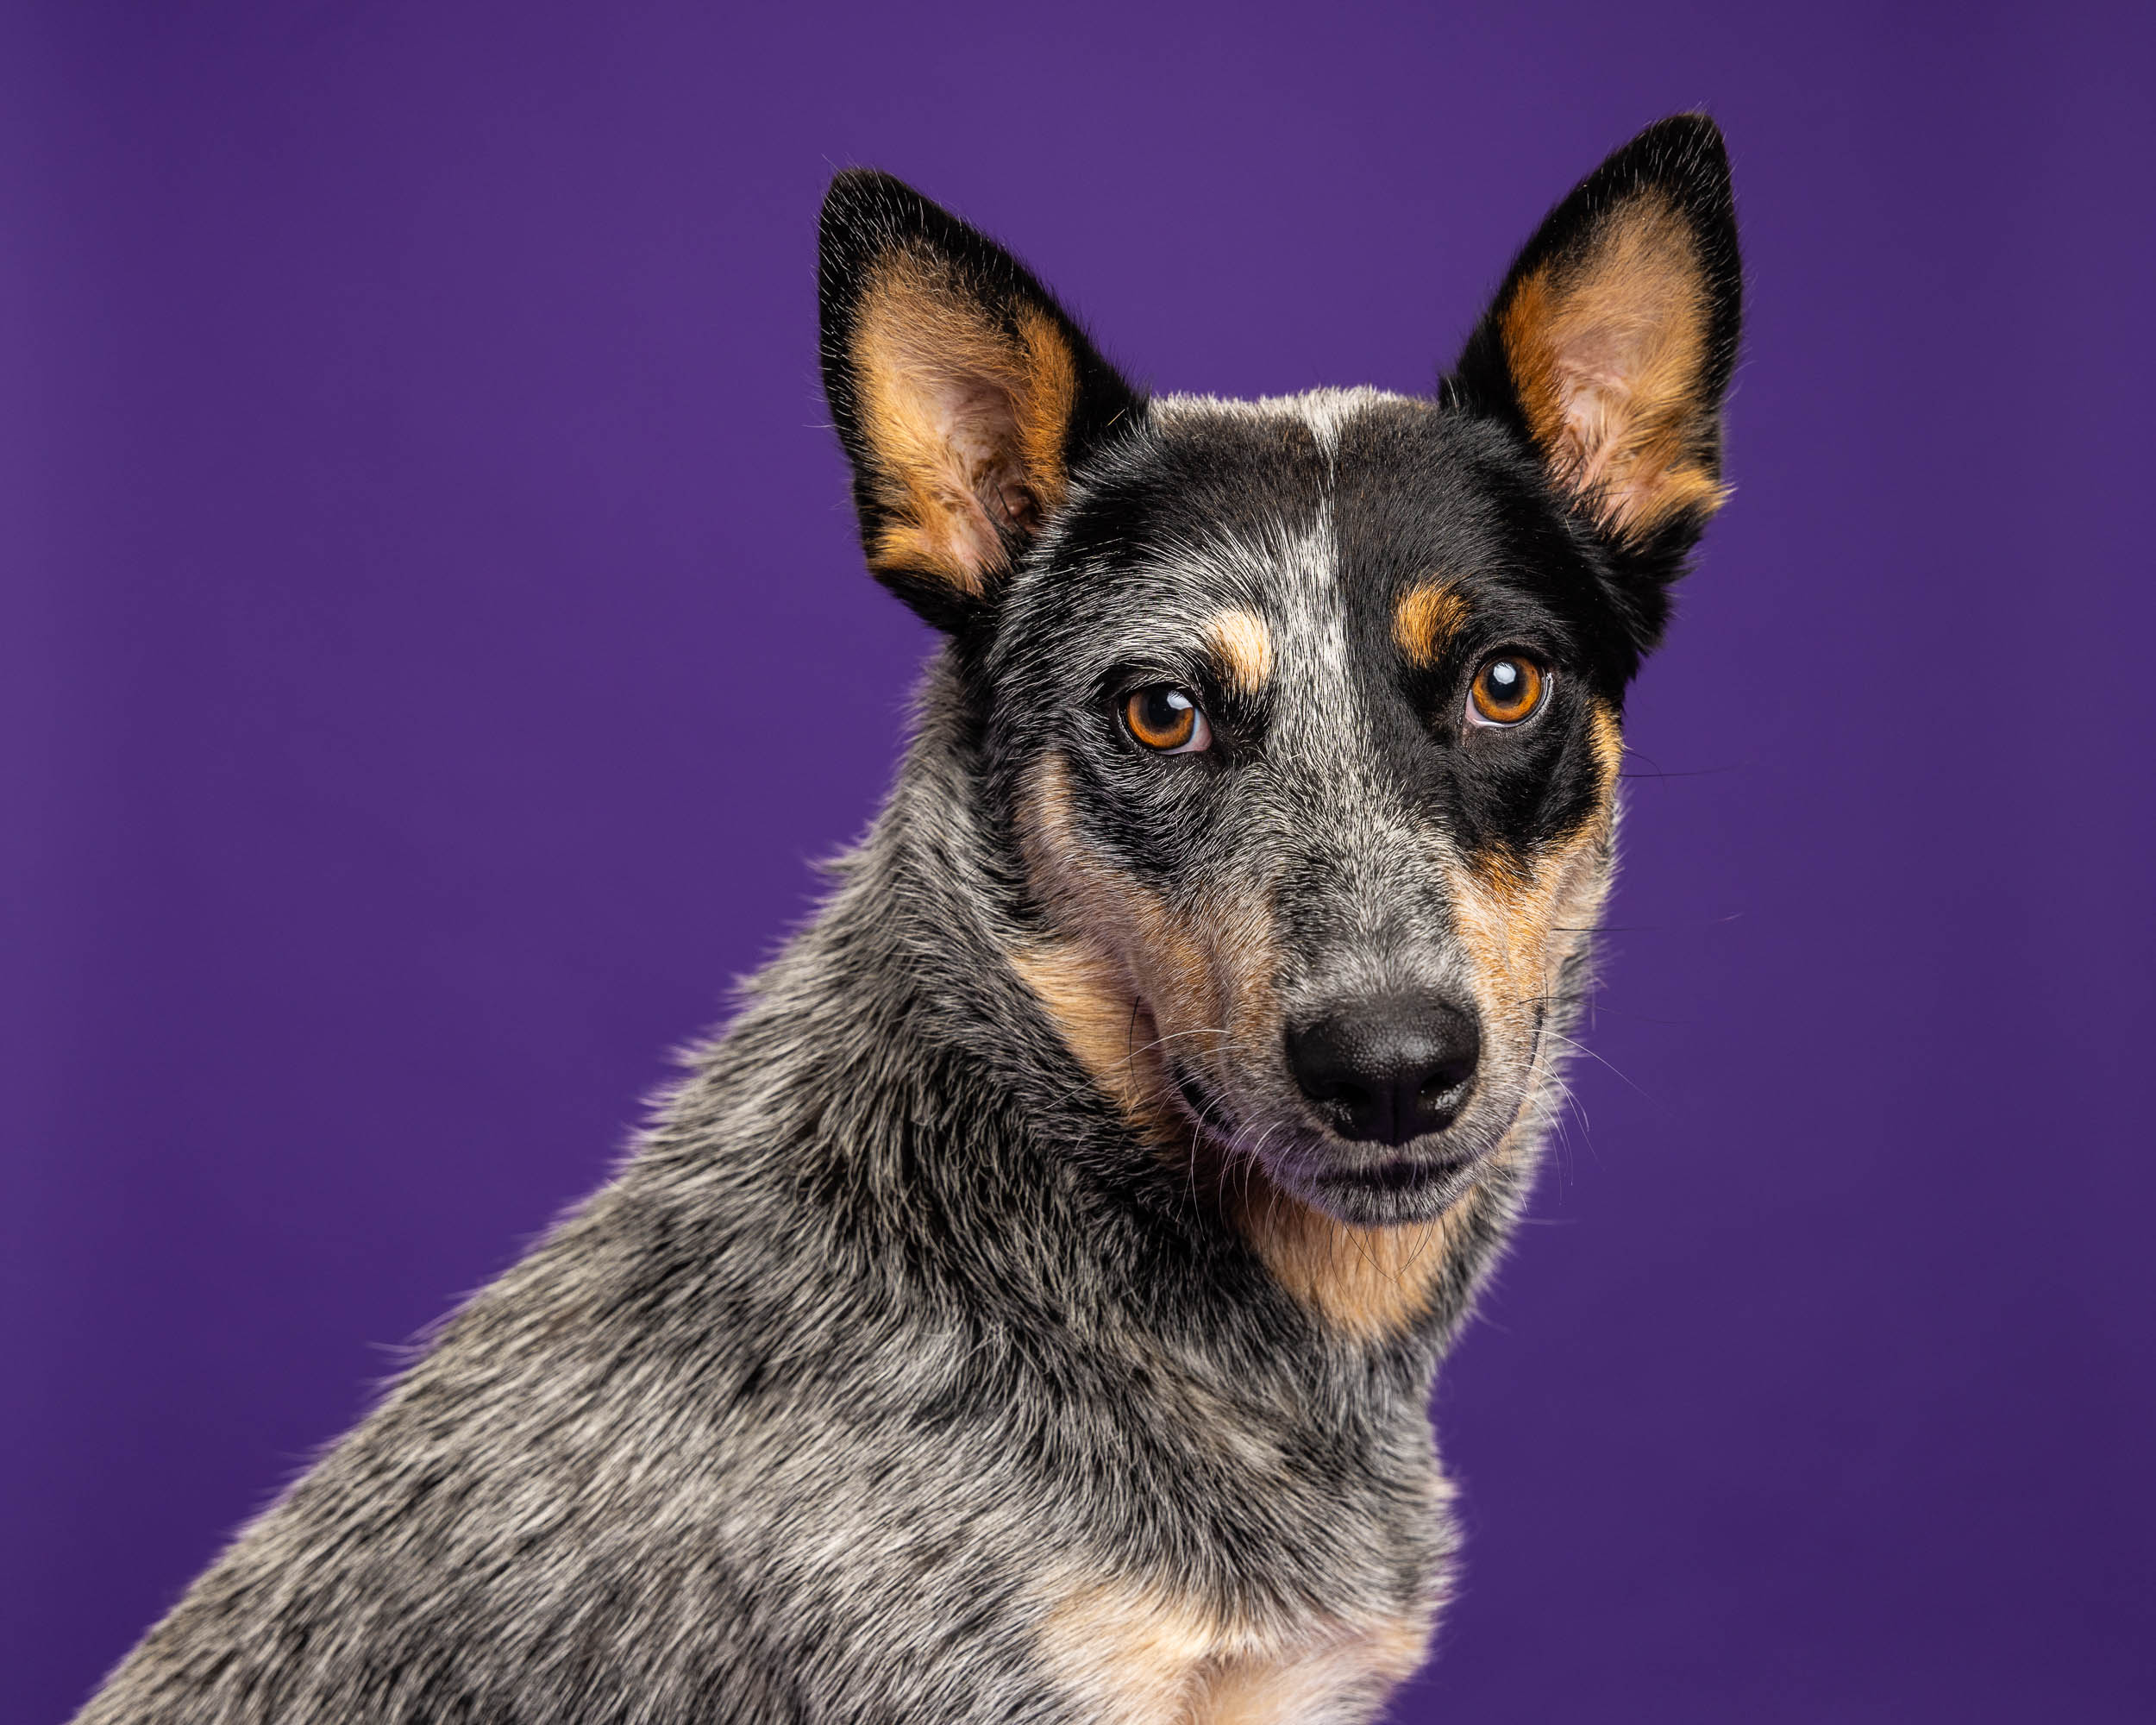 close-up-studio-cattle-dog-portrait-against-purple-2454